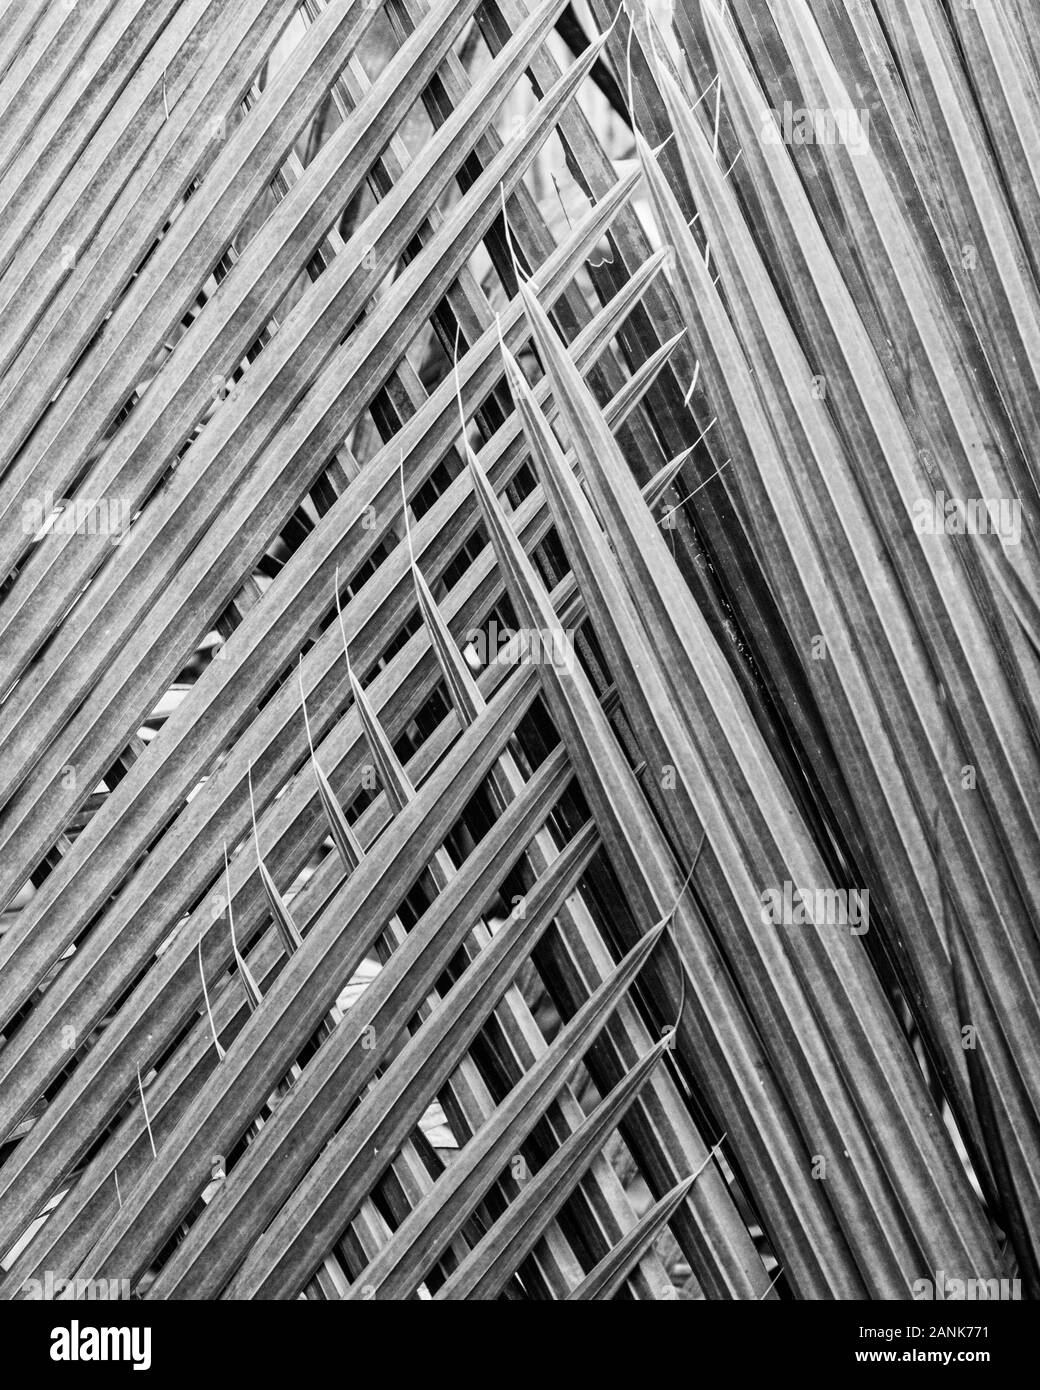 Abstract disegno geometrico fromed da fronde di palma. Foto Stock